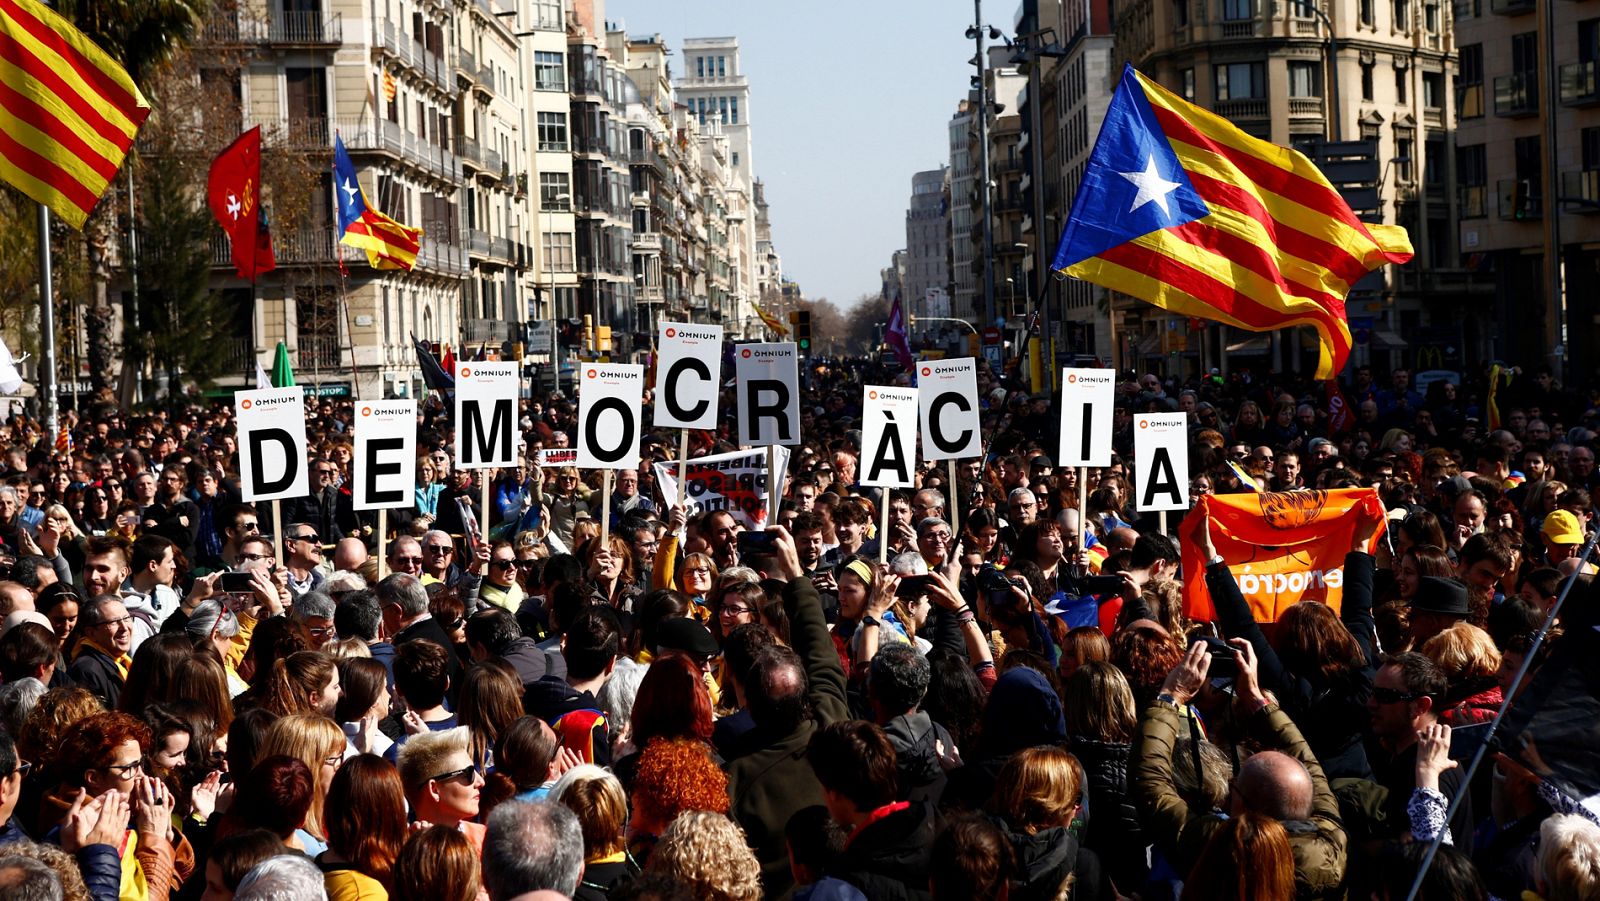 Los incidentes durante la huelga general en Cataluña se saldan con varios detenidos, heridos y carreteras cortadas